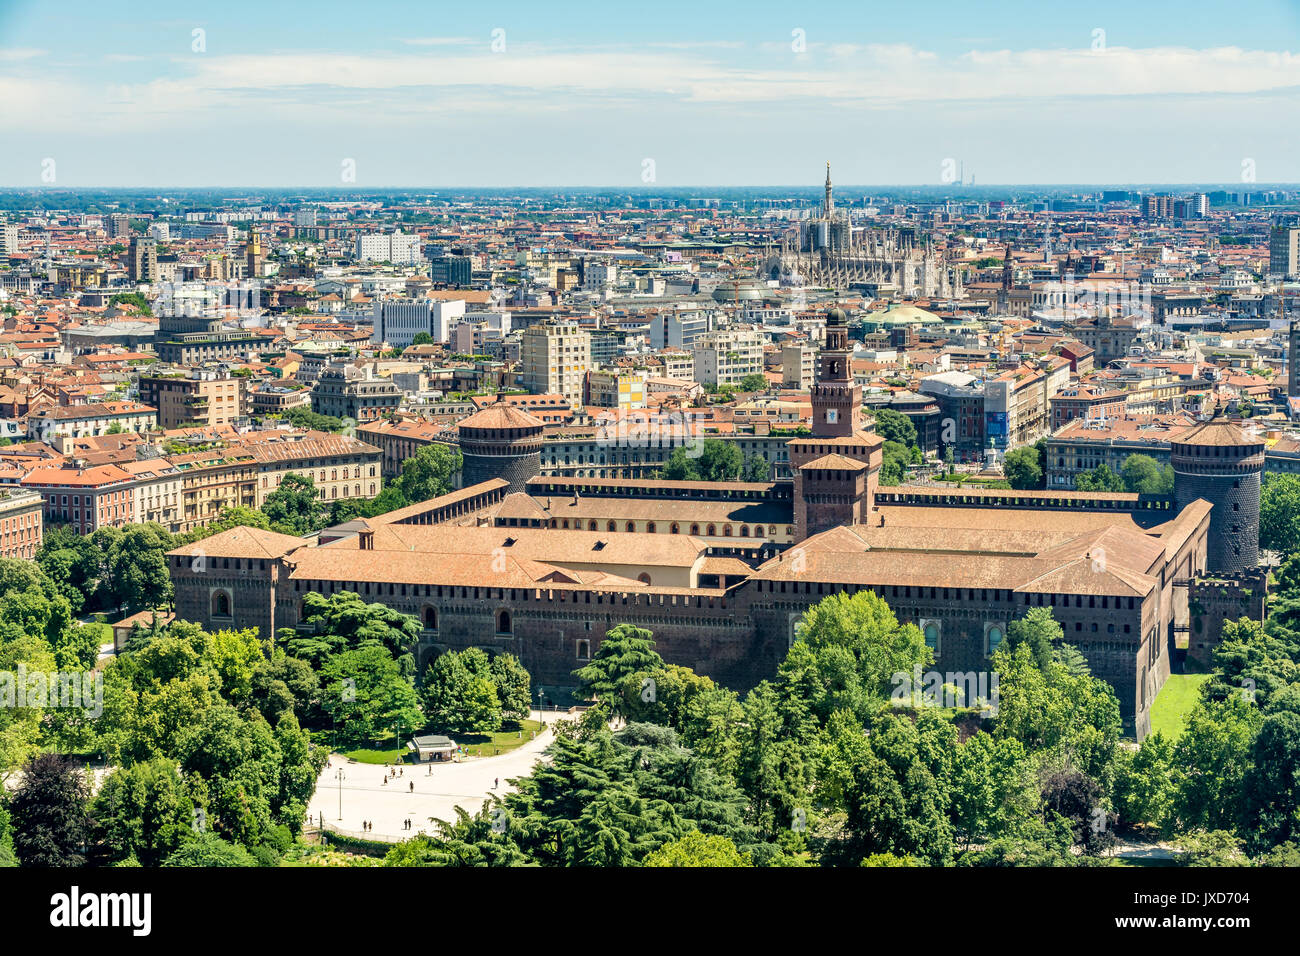 Vista aerea dalla Torre Branca (Torre Branca) del Castello Sforzesco (Castello Sforzesco) e la città di Milano, Italia Foto Stock